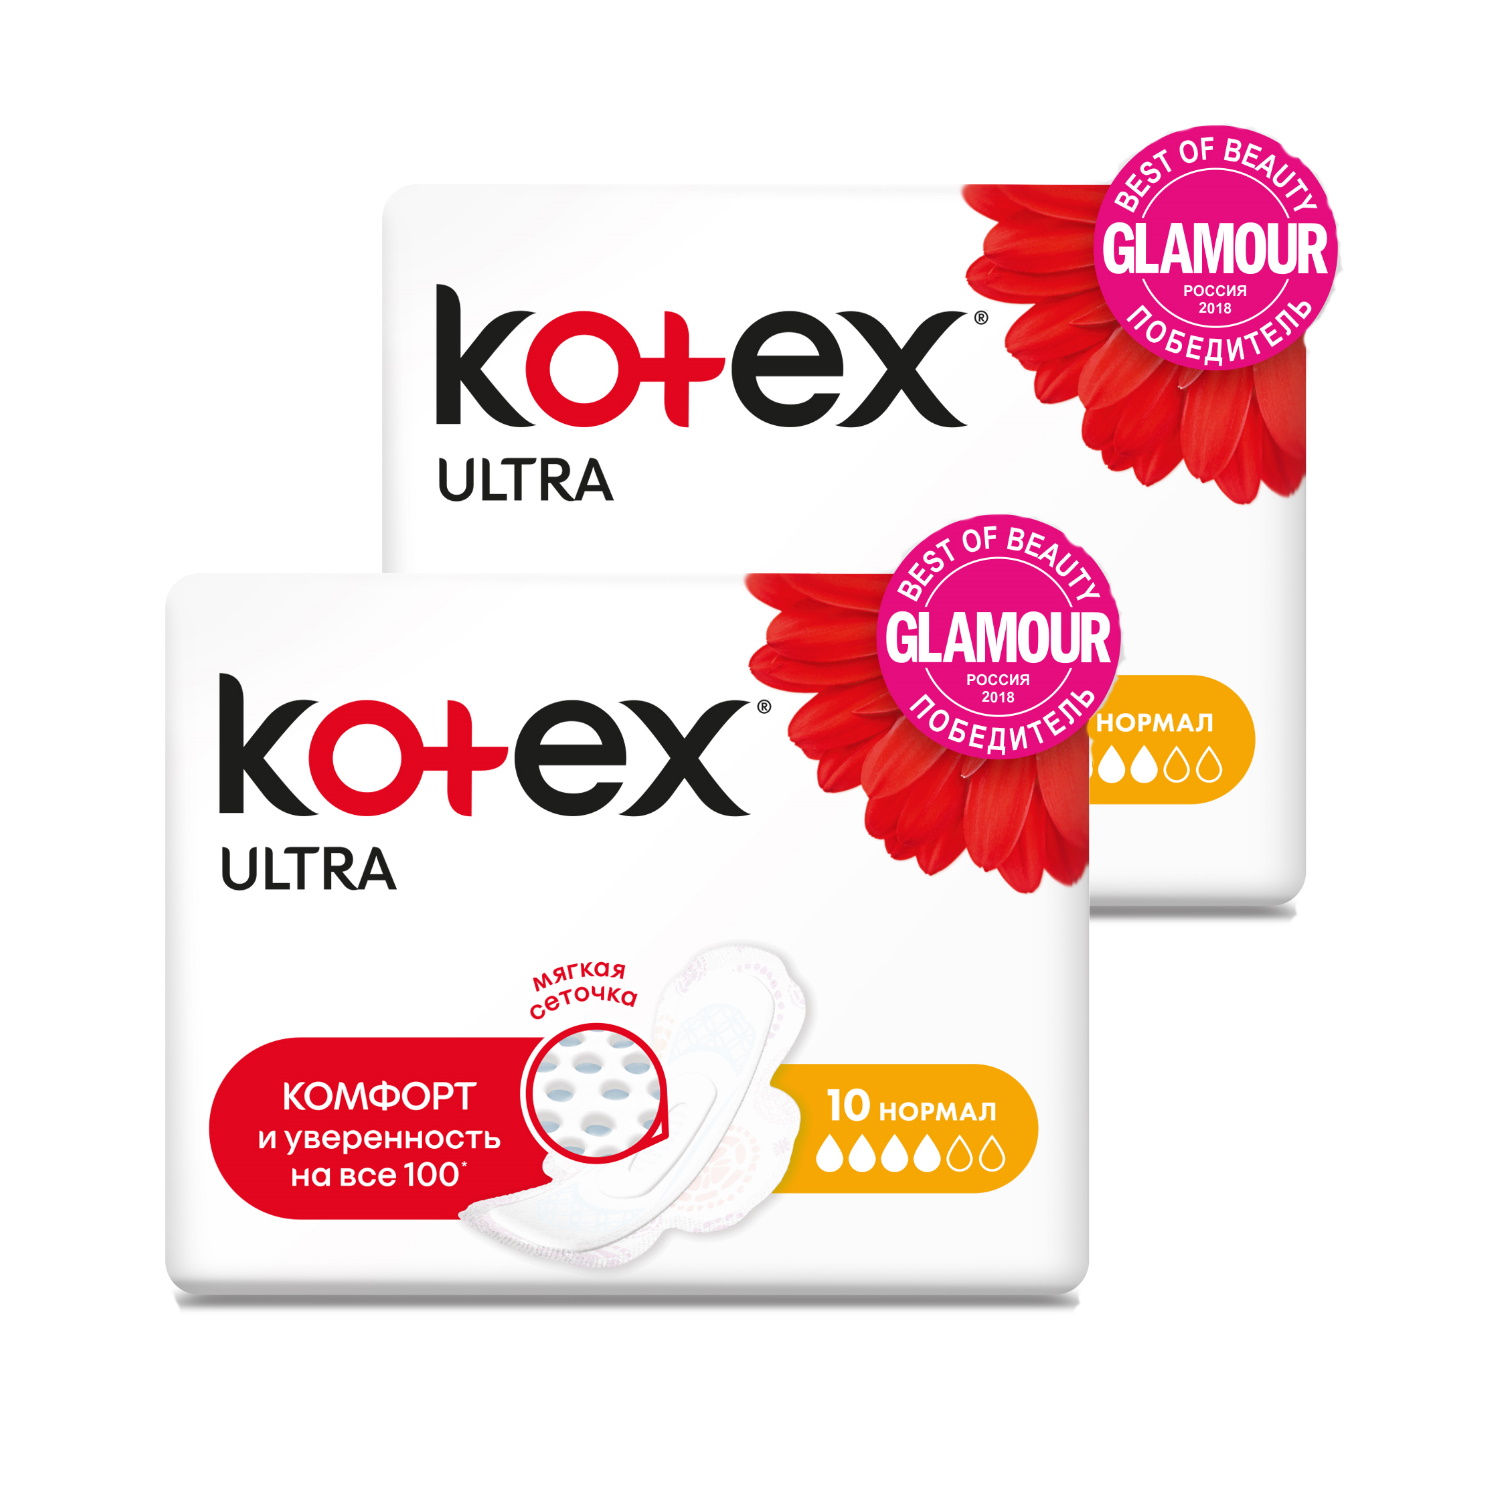 Купить Прокладки гигиенические KOTEX Ультра Сетч. Нормал Fast Absorb, 10 шт (Набор из 2 штук)